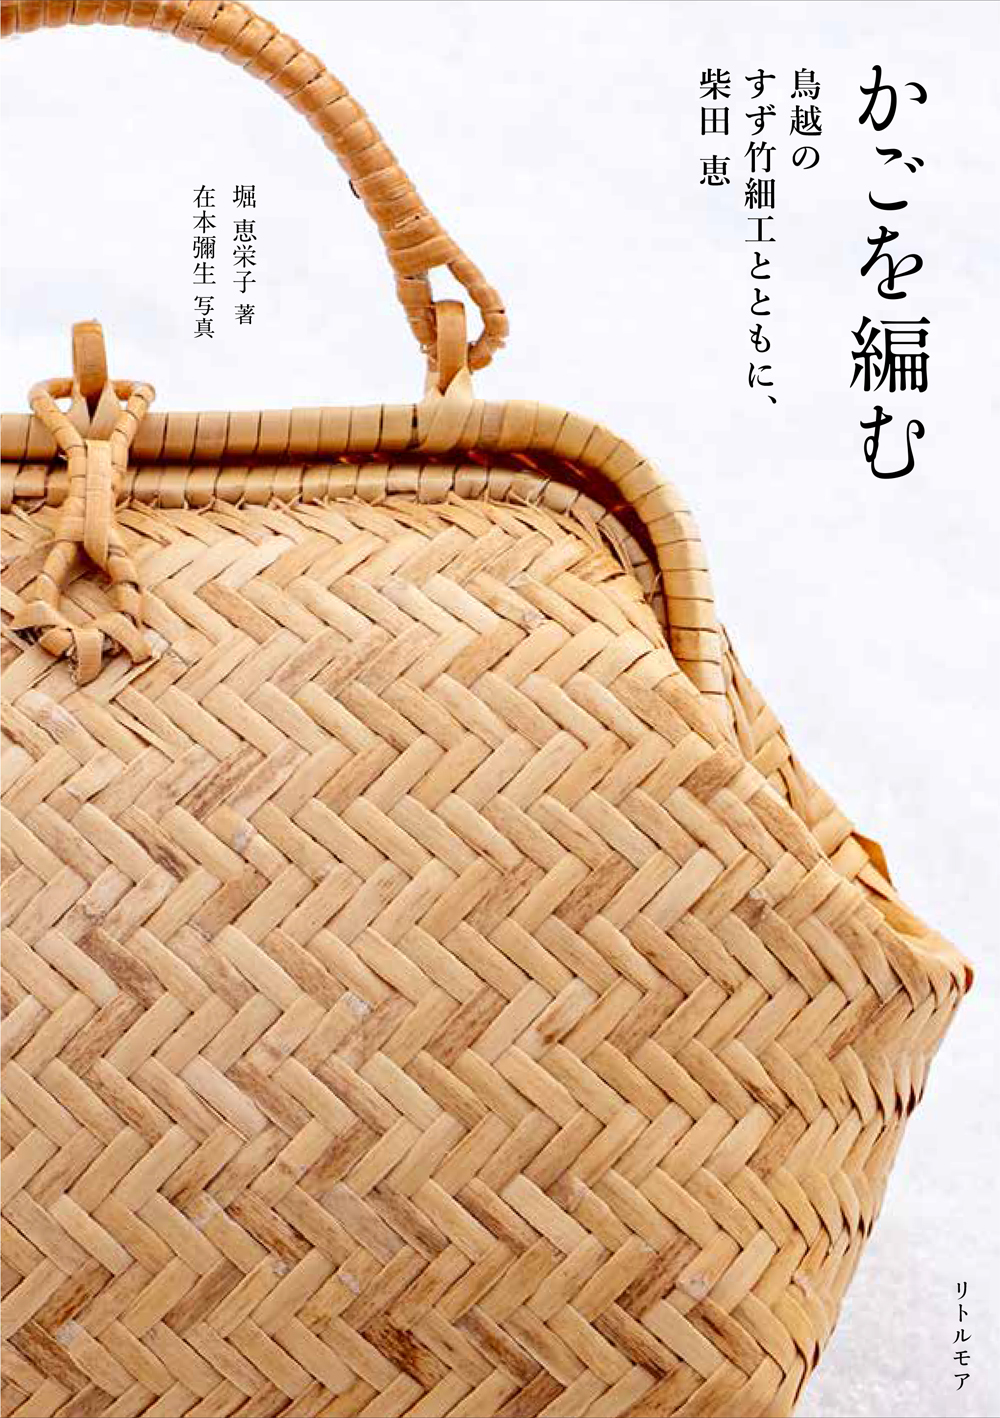 『かごを編む　鳥越のすず竹細工とともに、柴田 恵』 堀 惠栄子